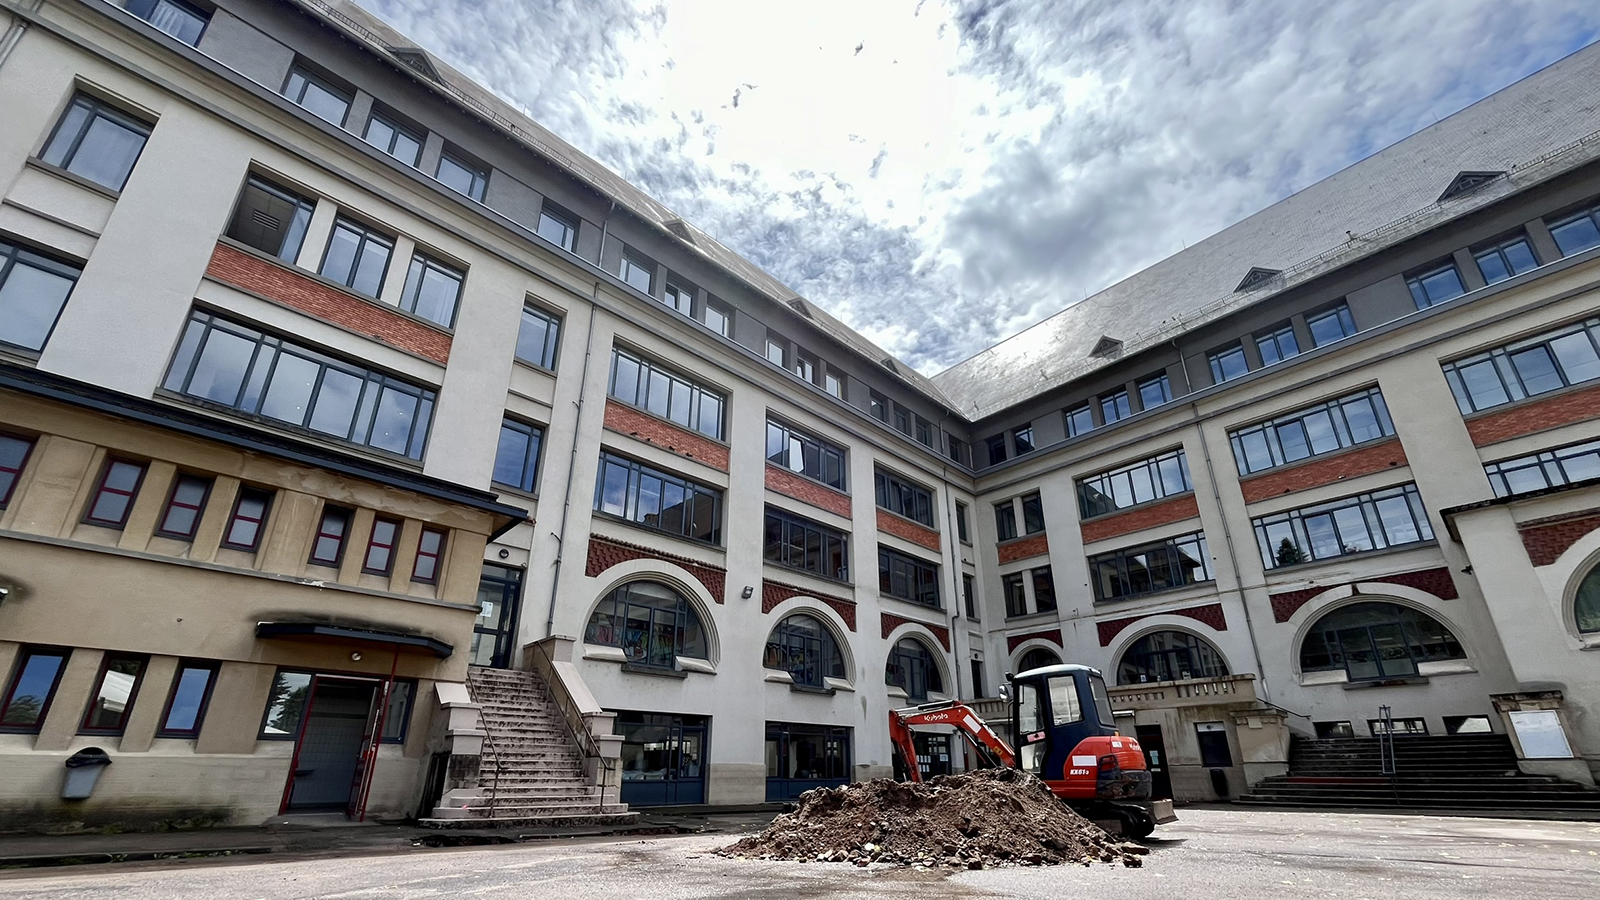 Plus de 4 millions d’euros pour rénover le collège Clémenceau